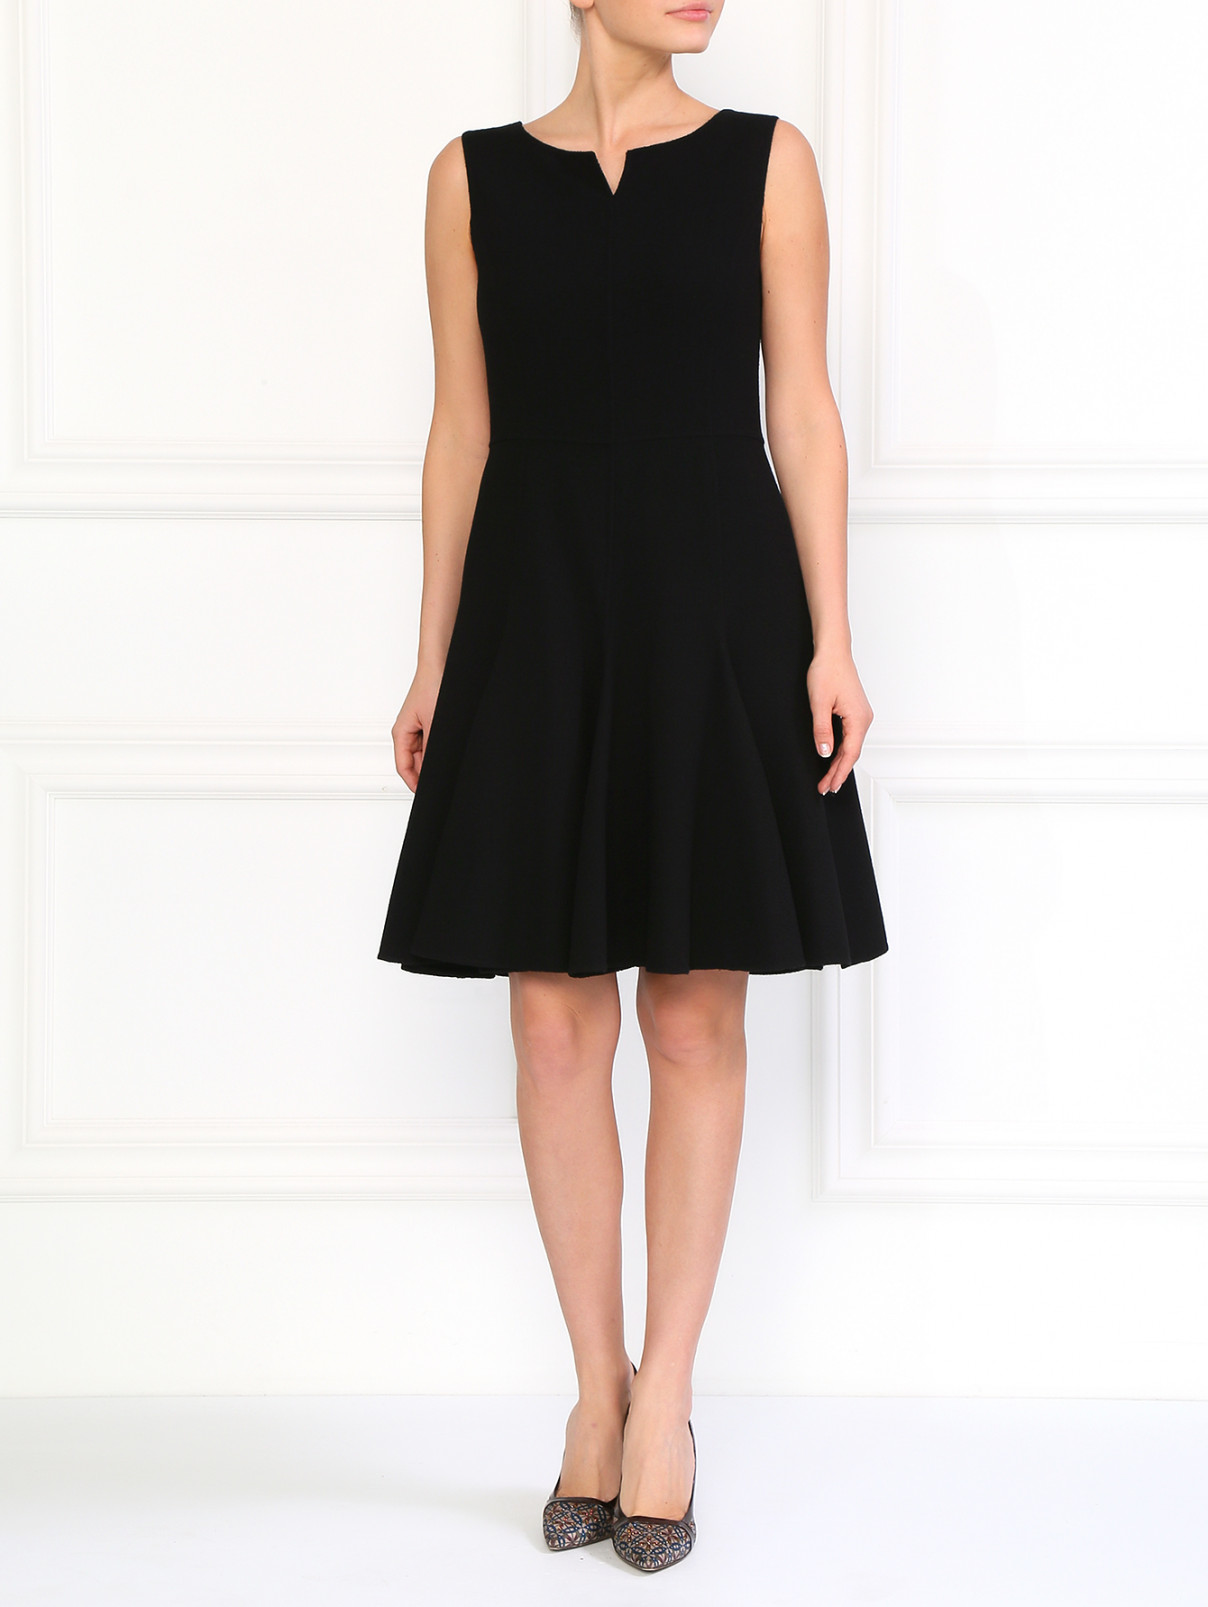 Шерстяное платье с воланами Armani Collezioni  –  Модель Общий вид  – Цвет:  Черный